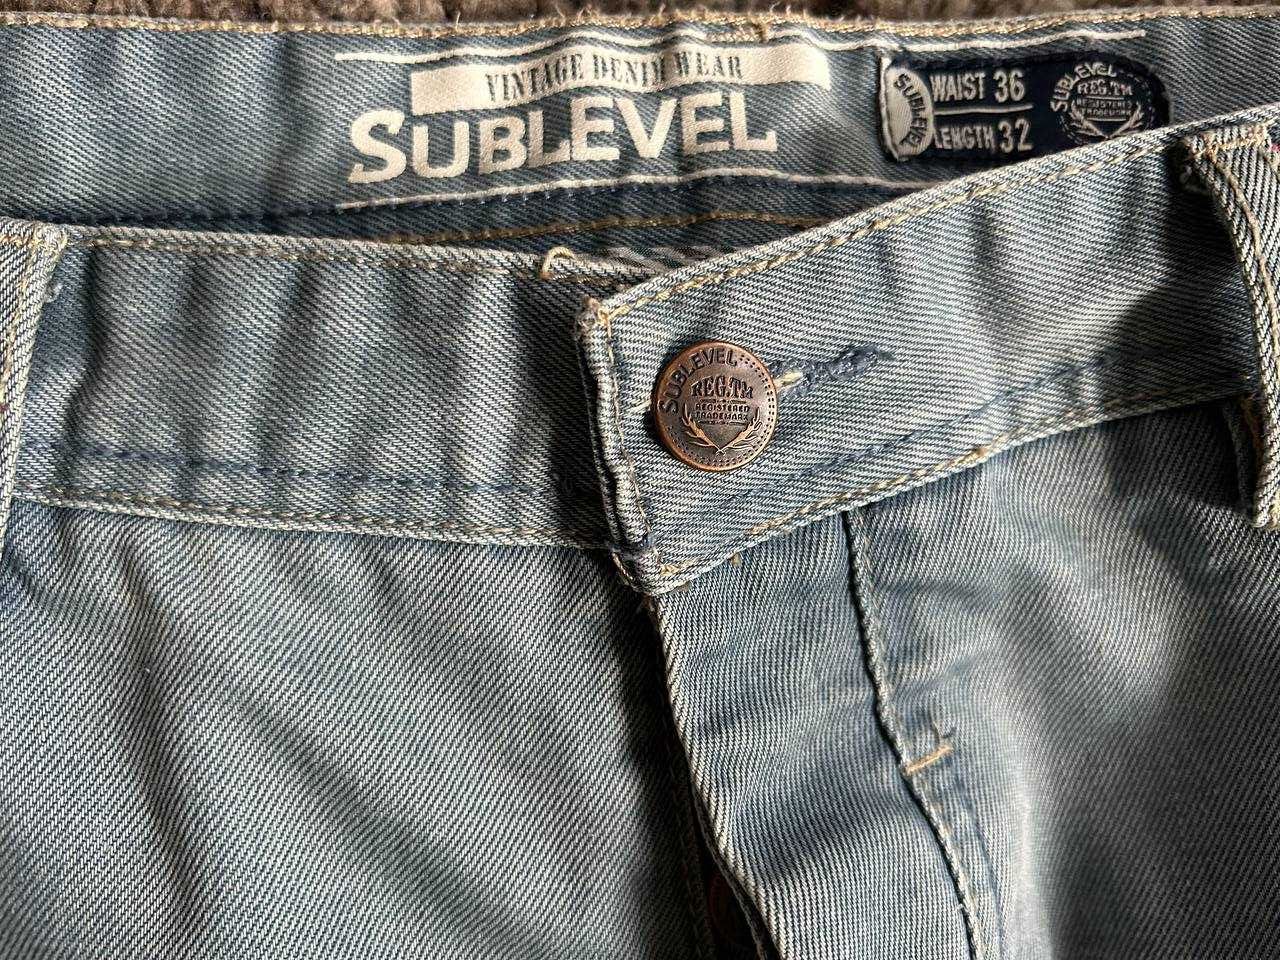 Blugi/Jeans SubLevel Vintage Denim